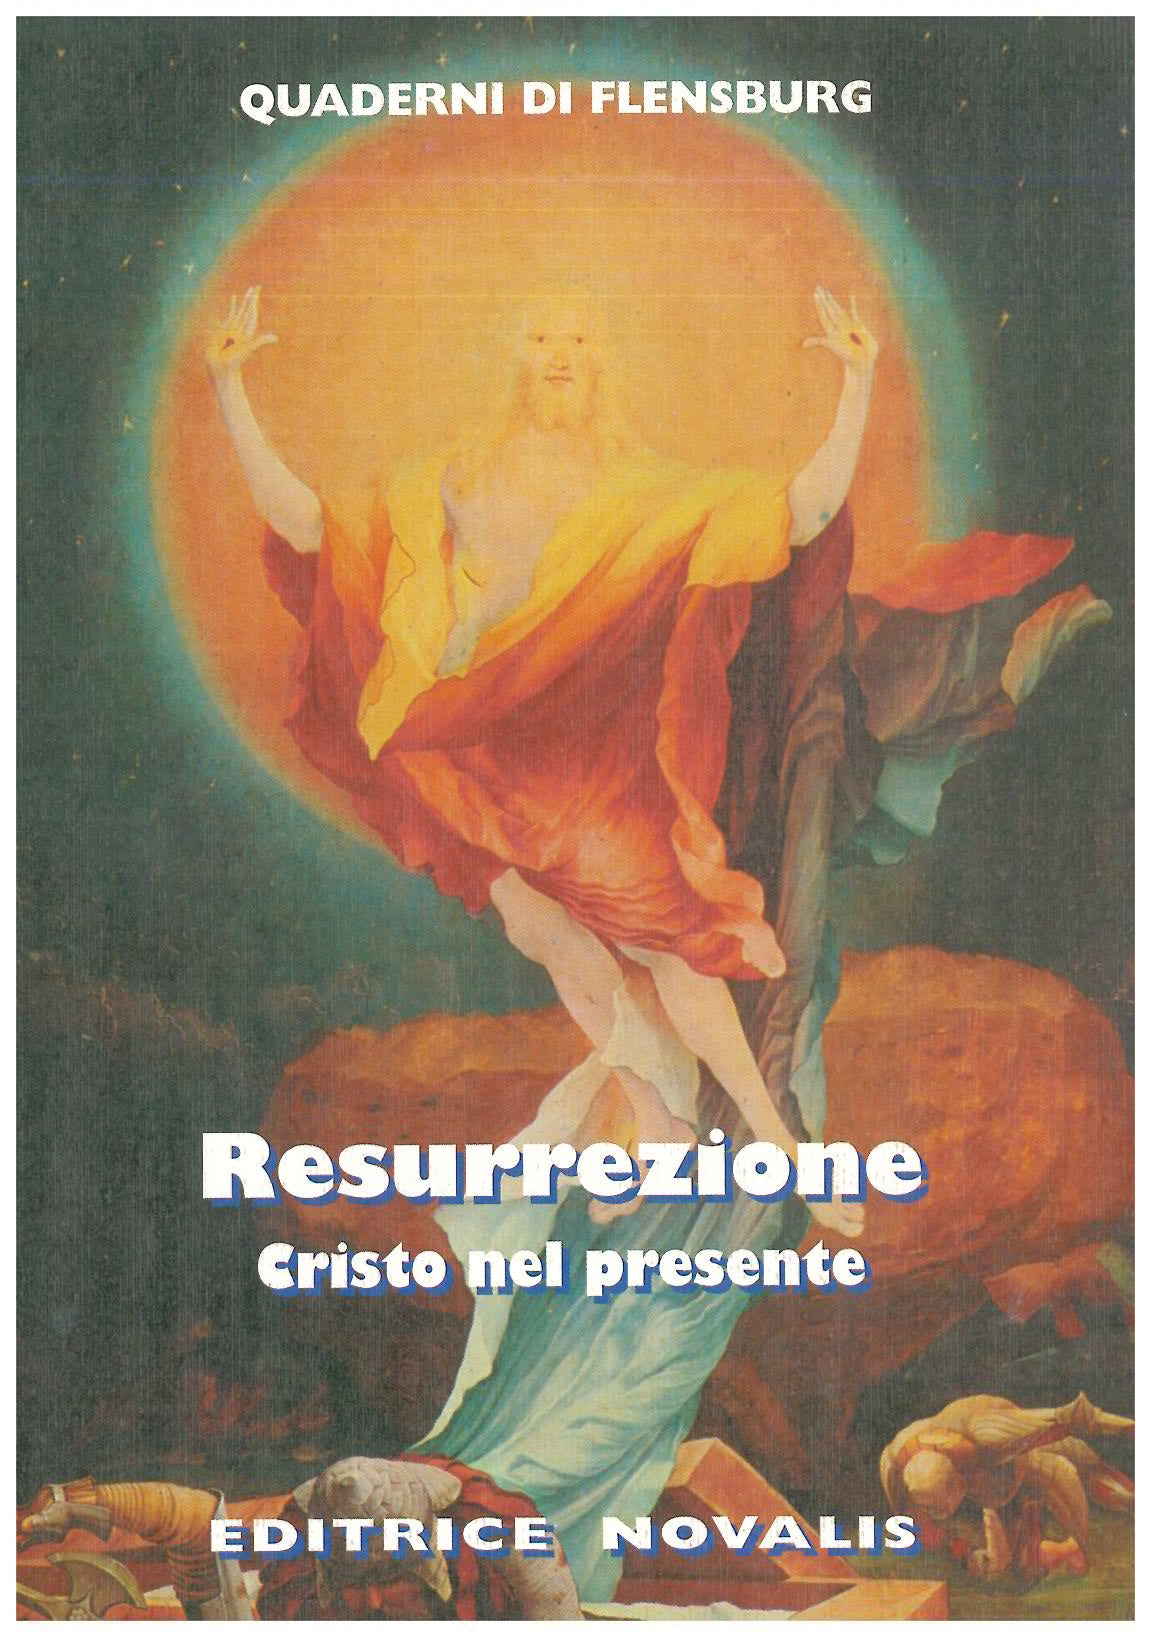 Resurrezione - AAVV